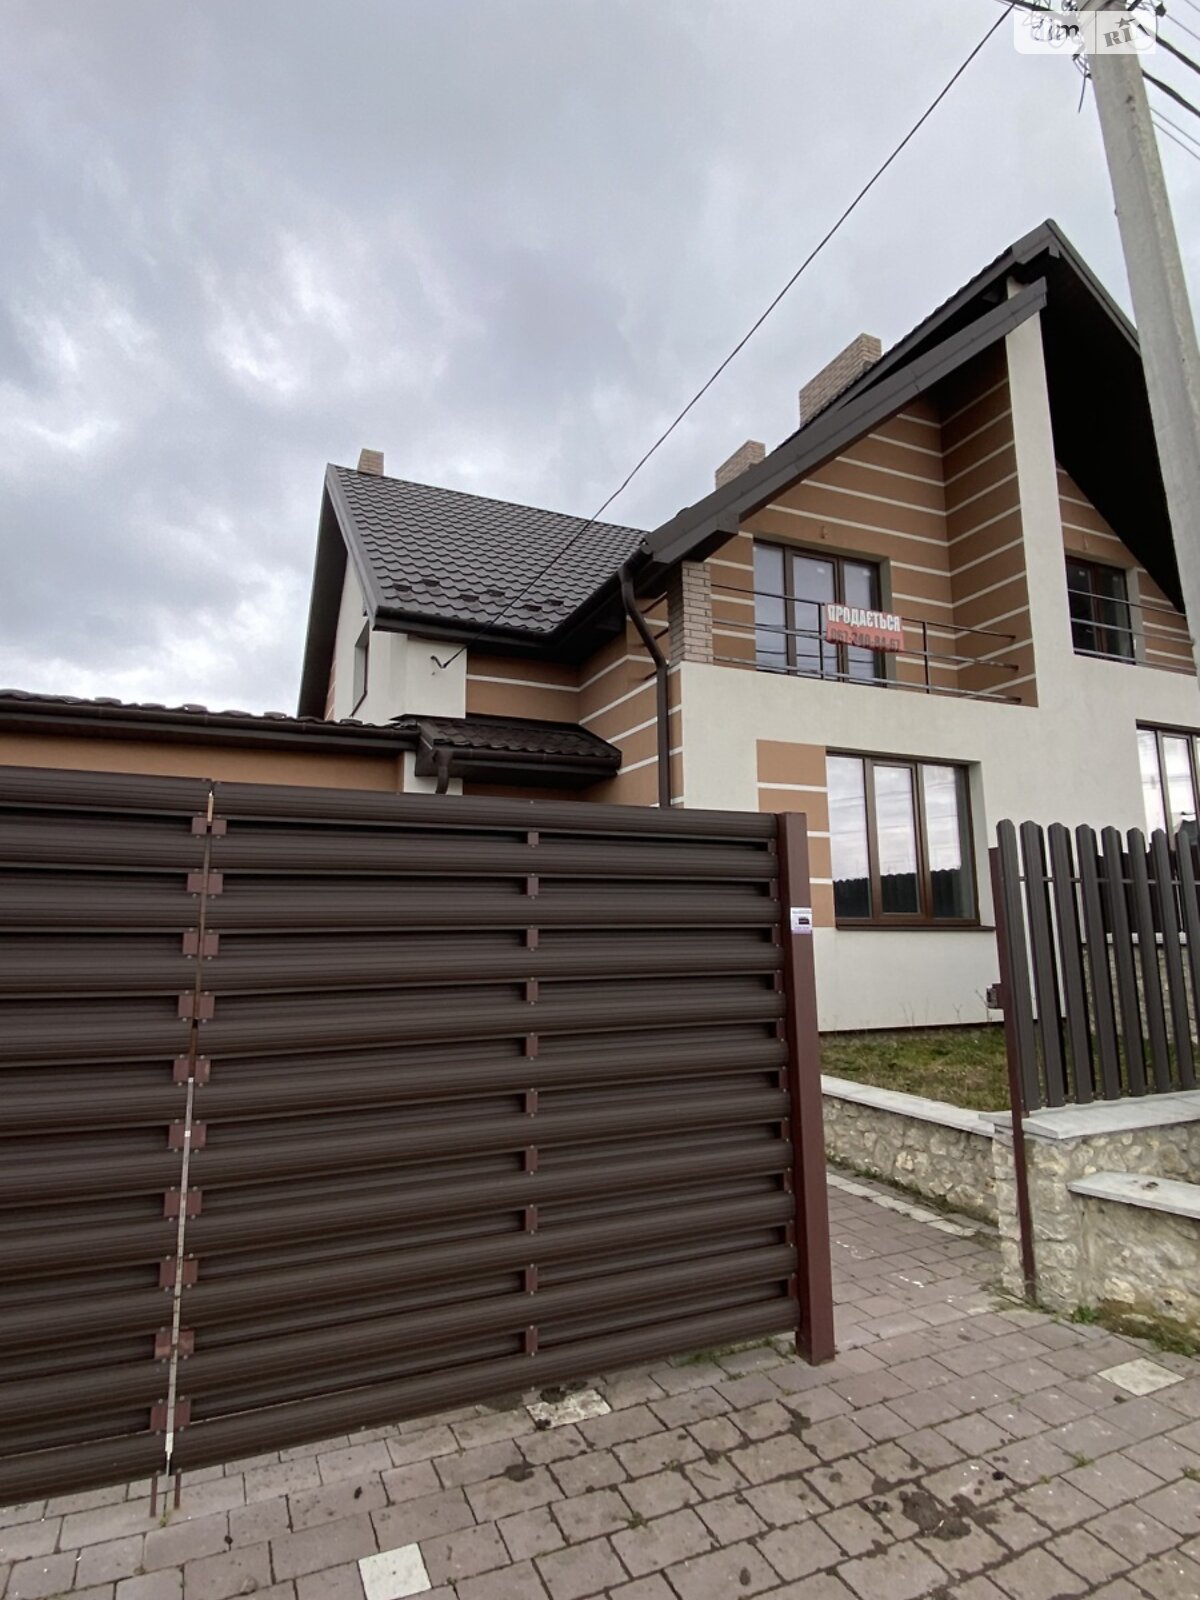 Продажа части дома в Байковцах, улица Просвещения, 4 комнаты фото 1